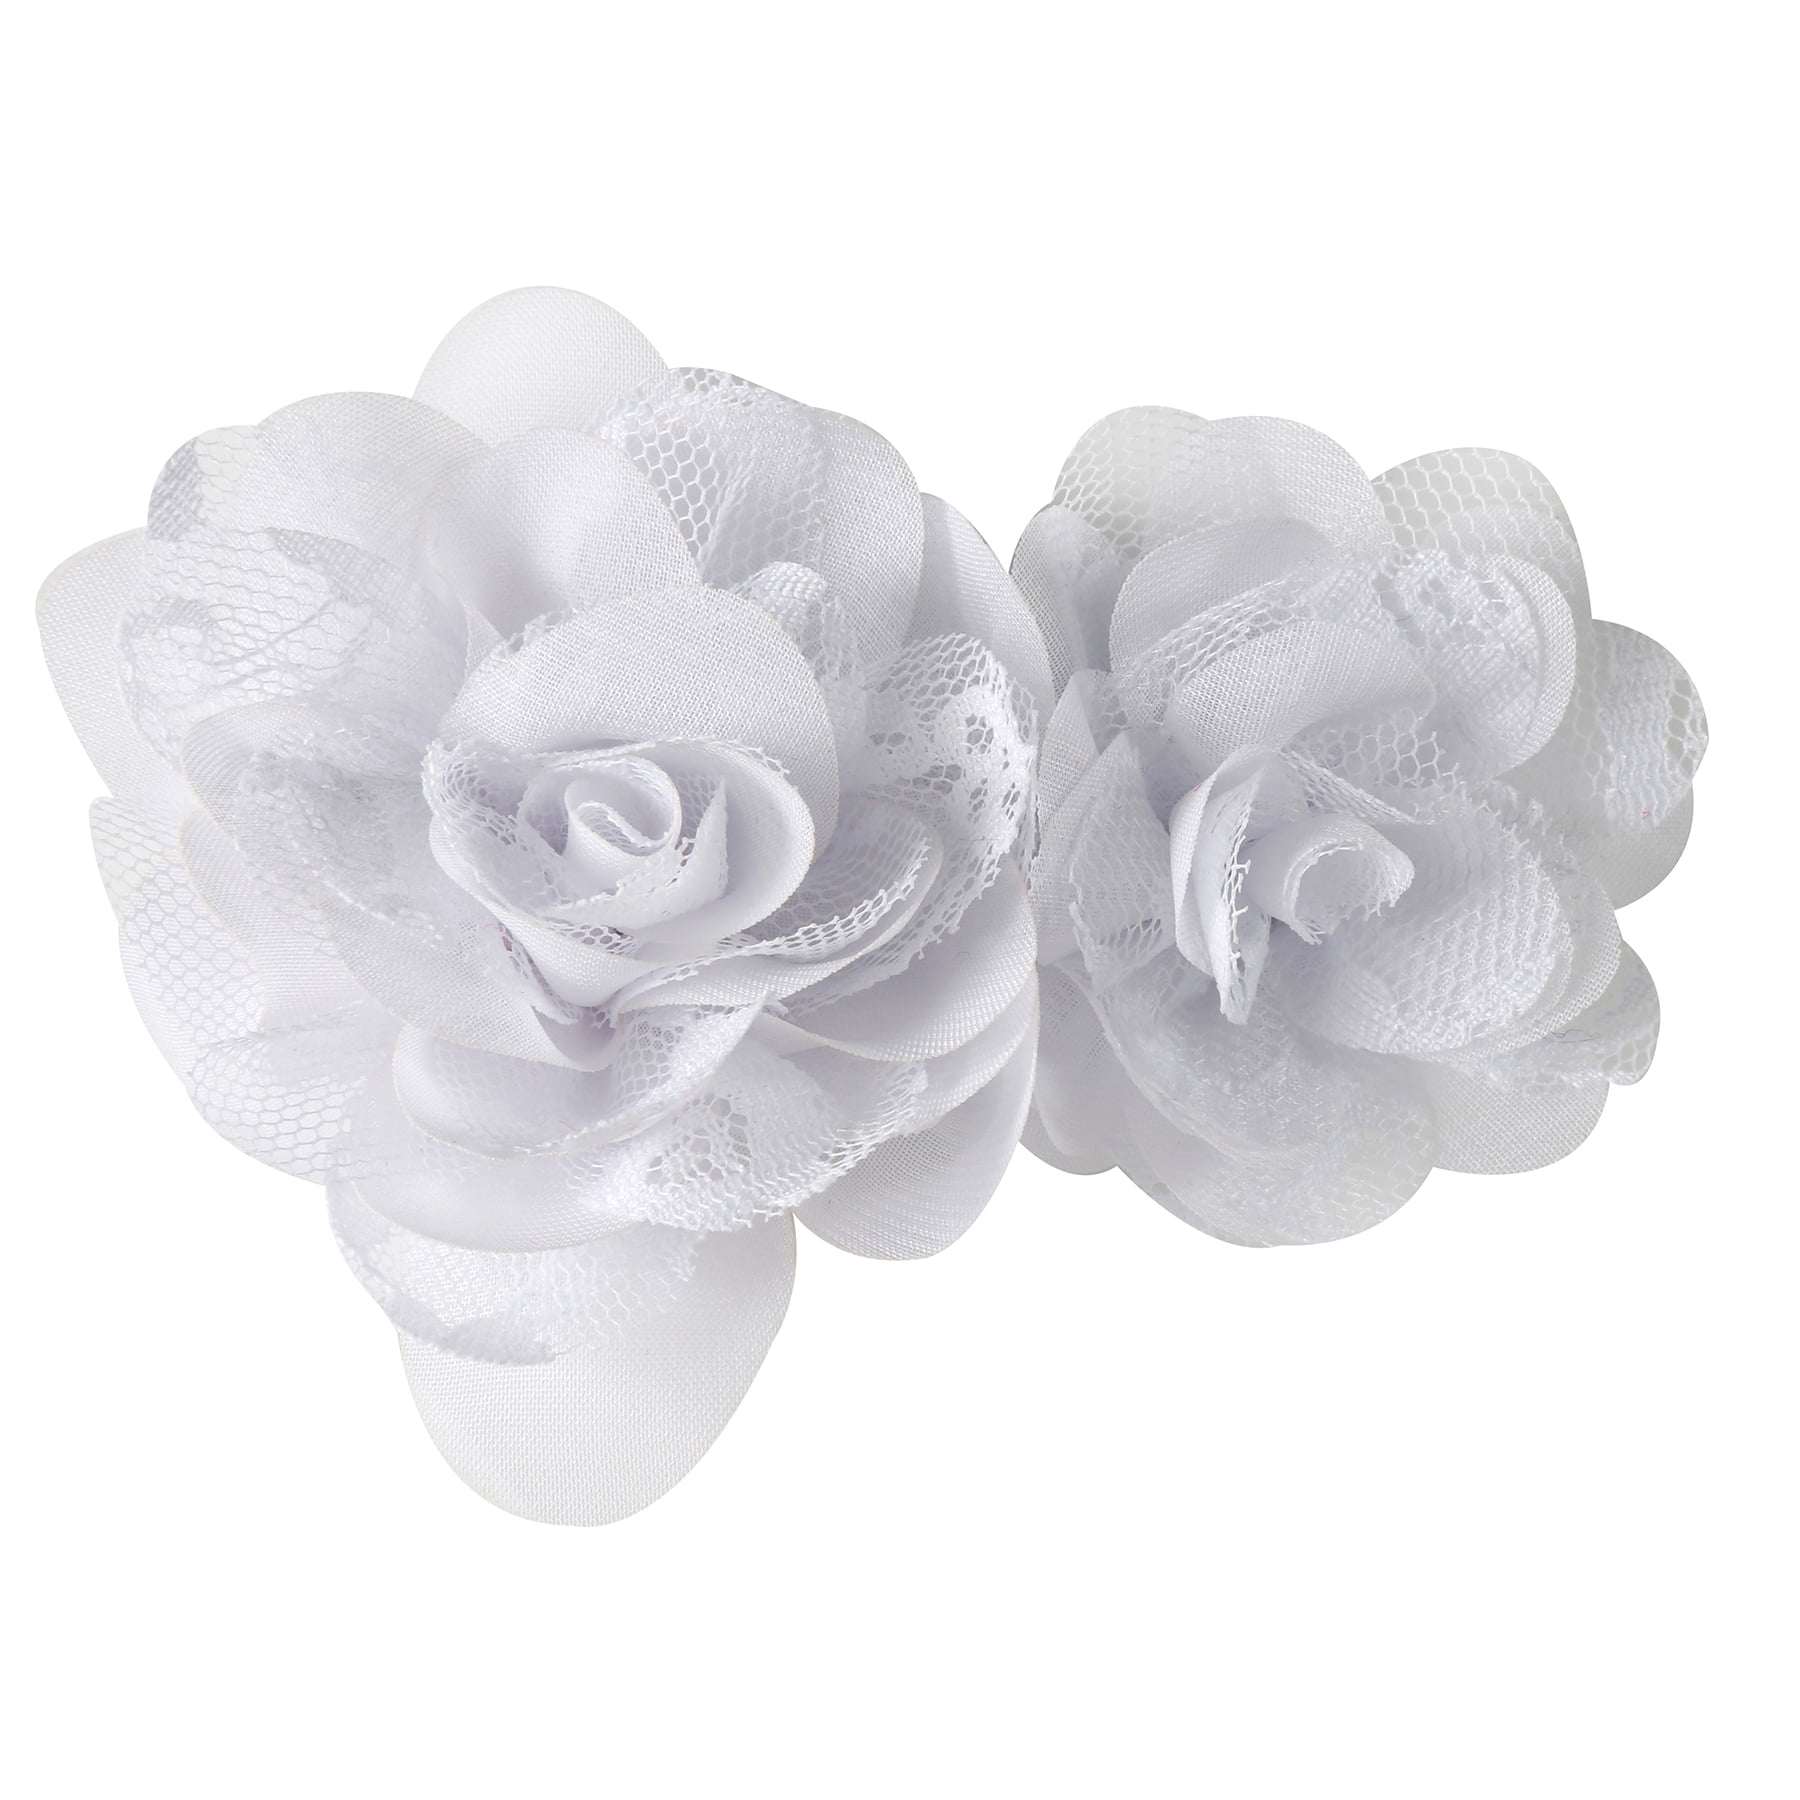 White Cream ROSETTE Chiffon LACE TRIM Appliques DIY Crafts 1y 16 Large Flowers 